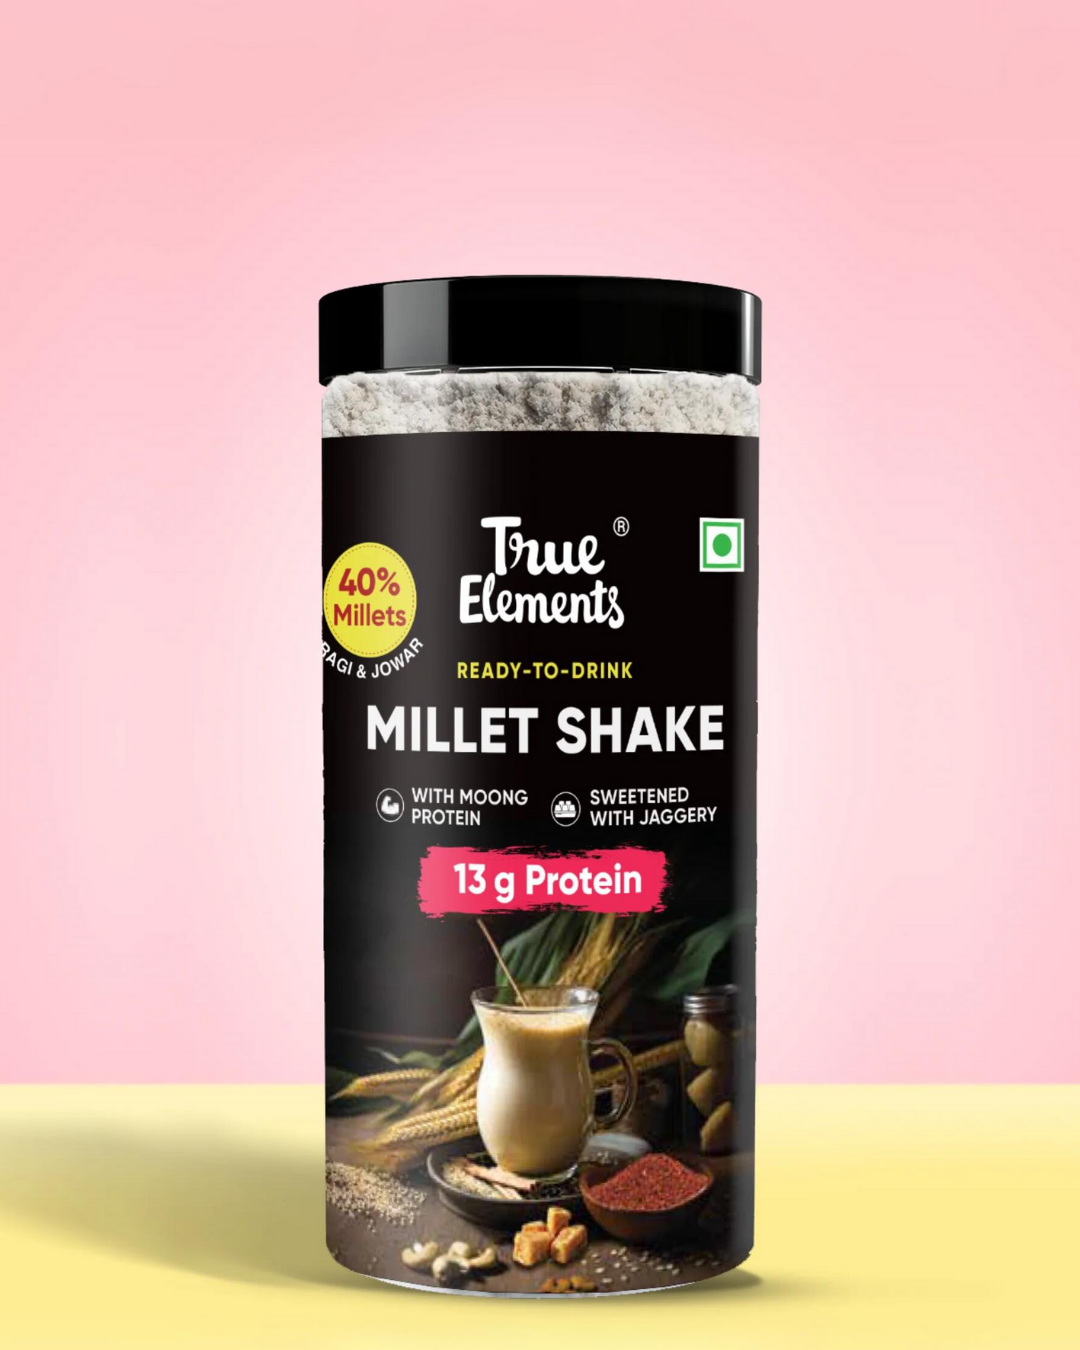 Millet Shake